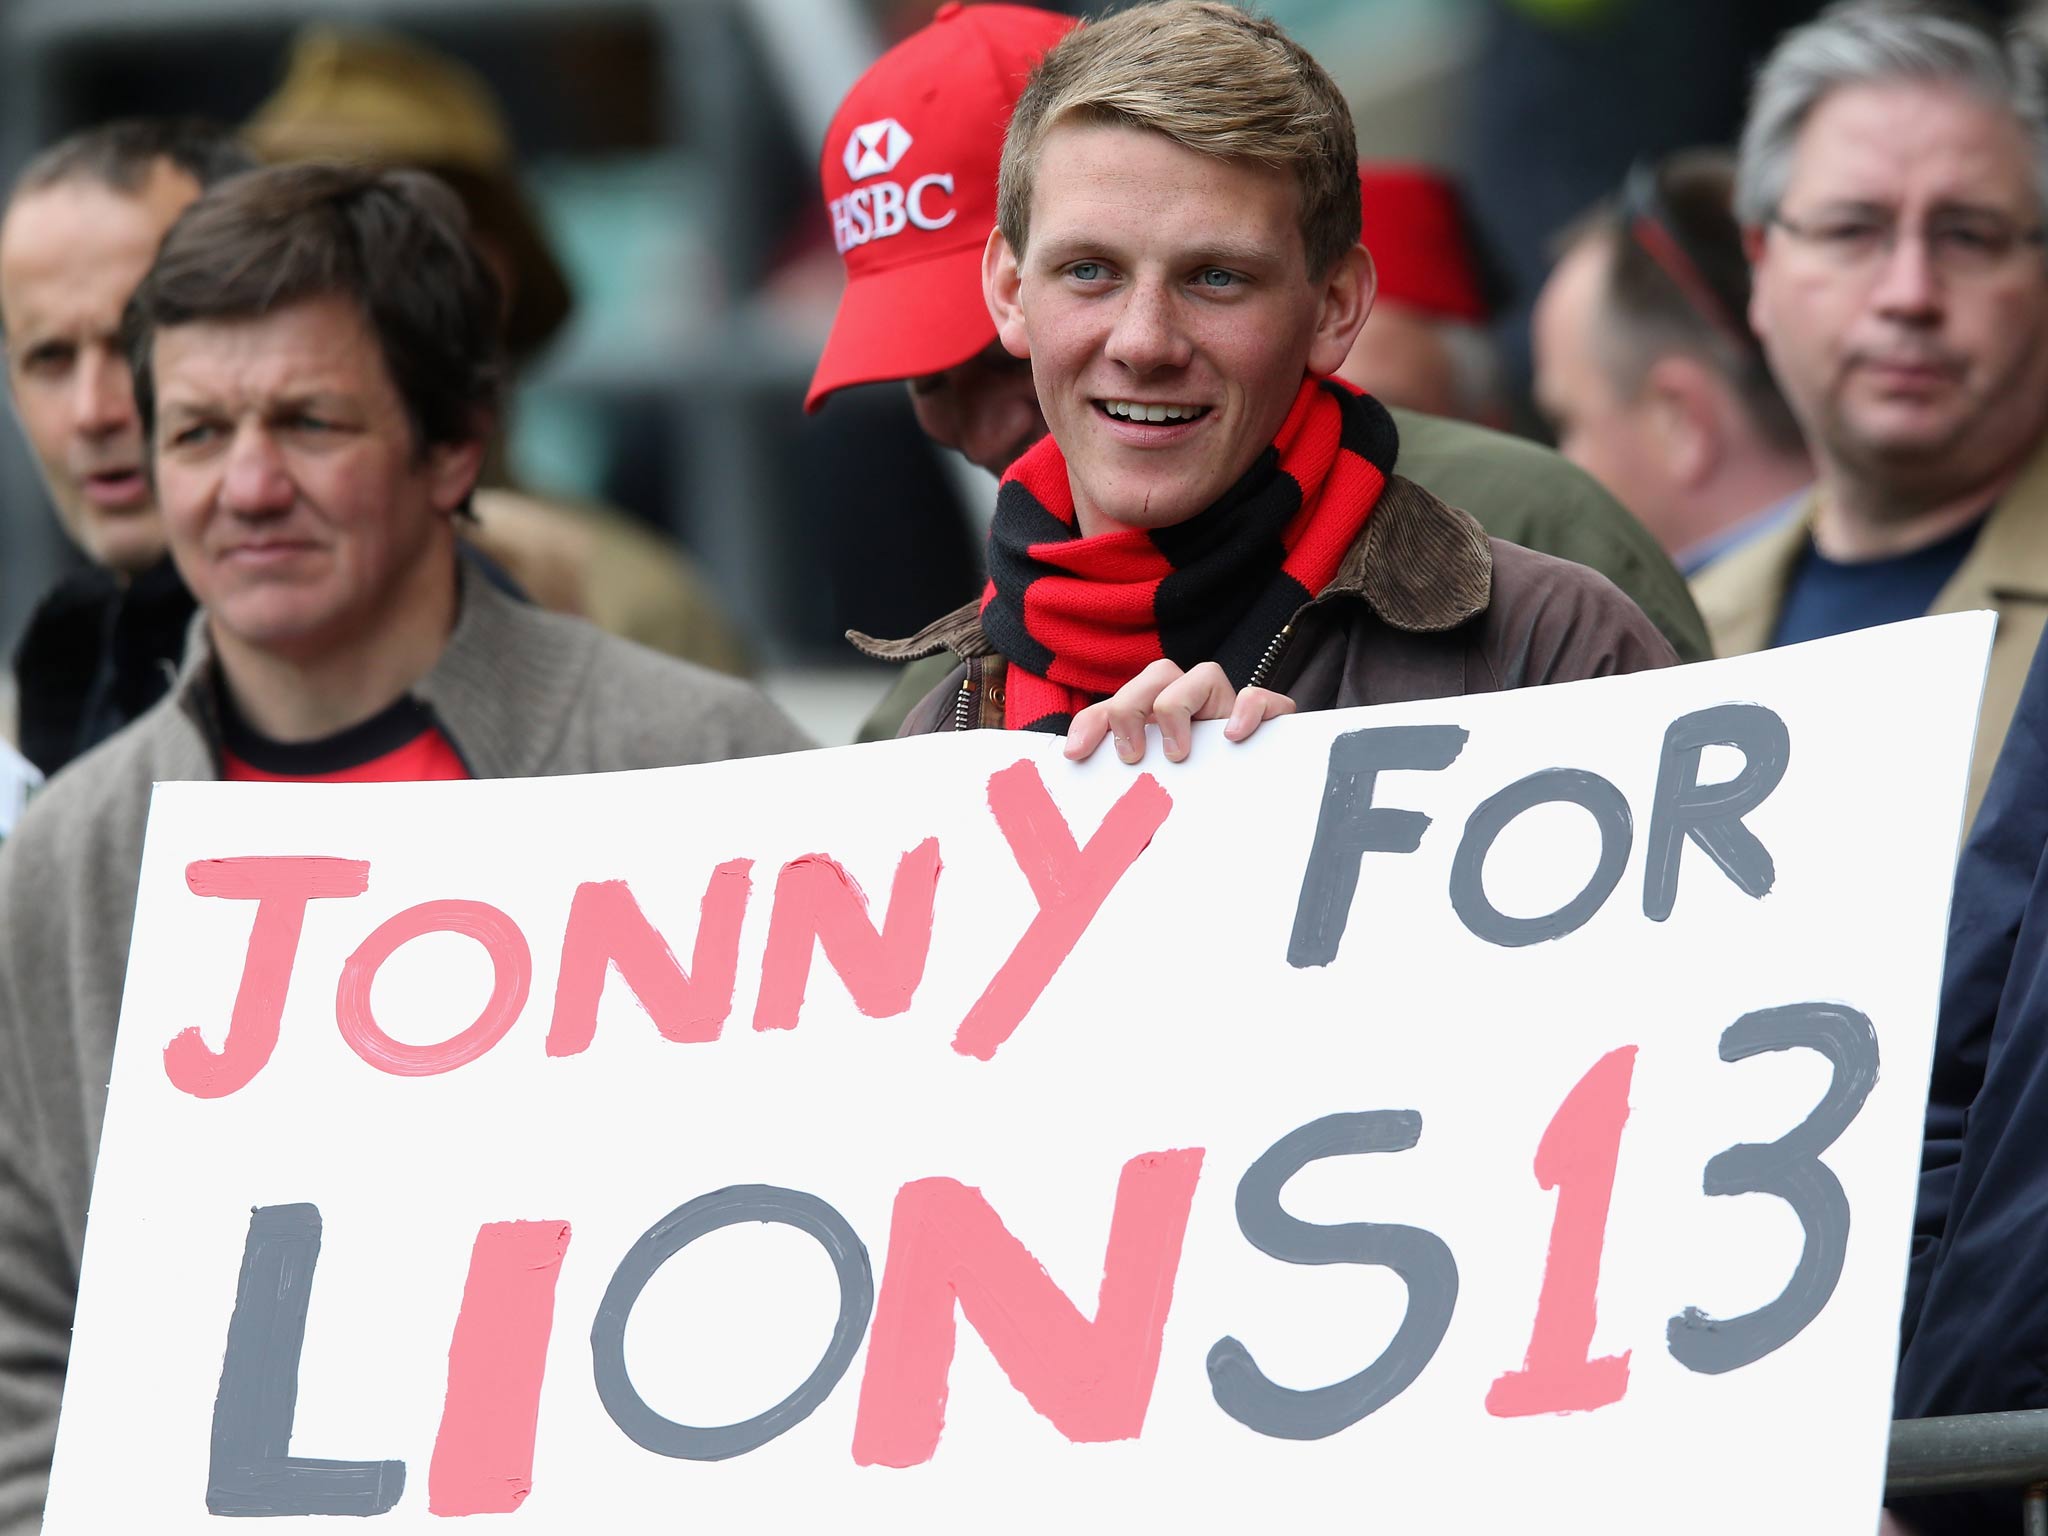 Will Jonny Wilkinson be selected?